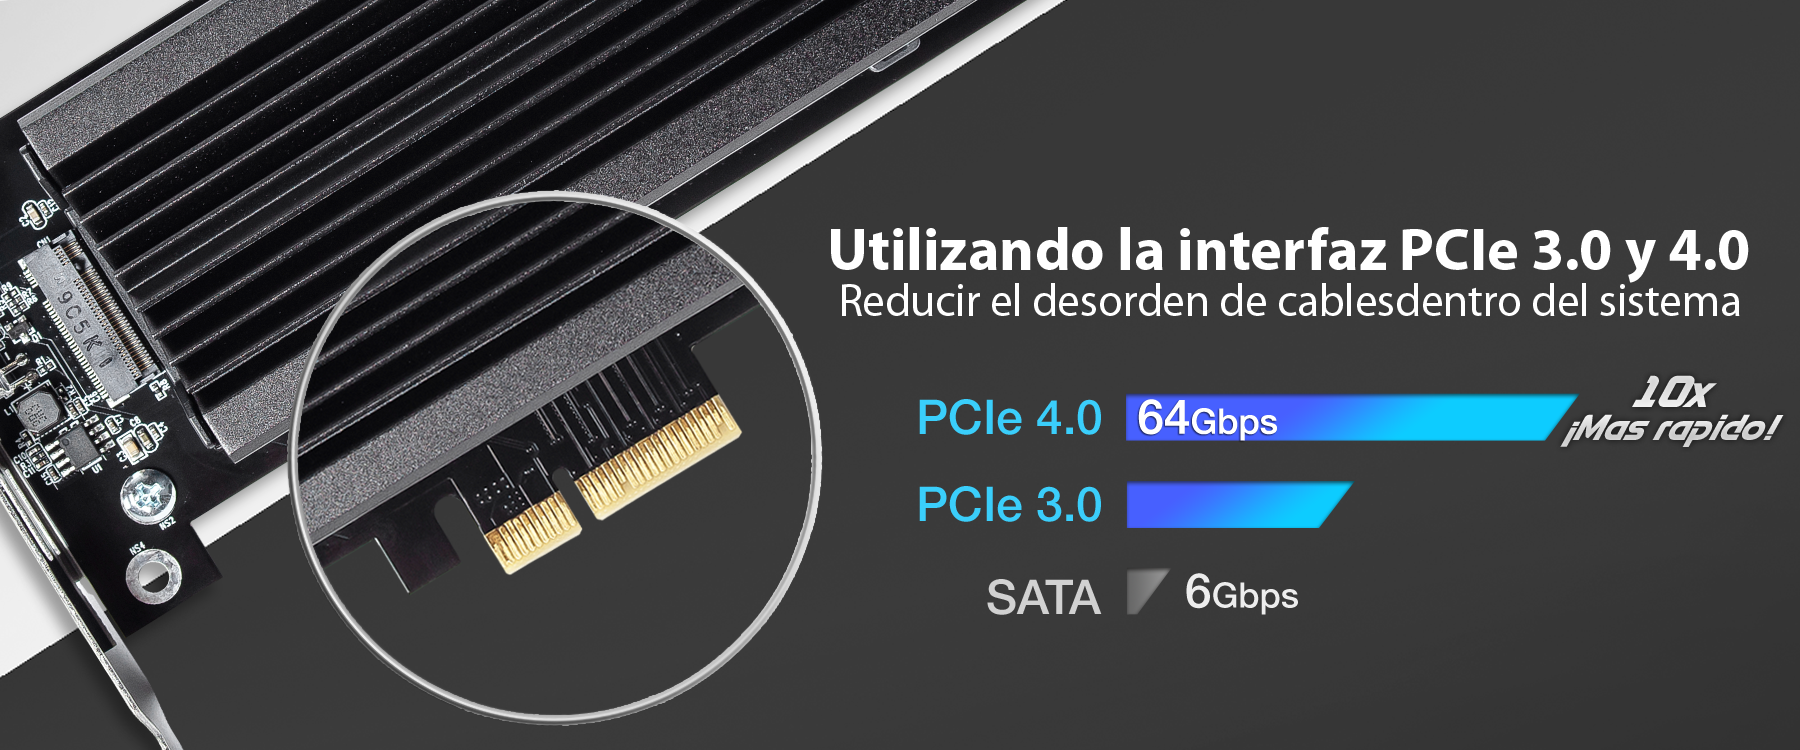 Foto de la interfaz PCIe 4.0 que reduce el desorden de cables